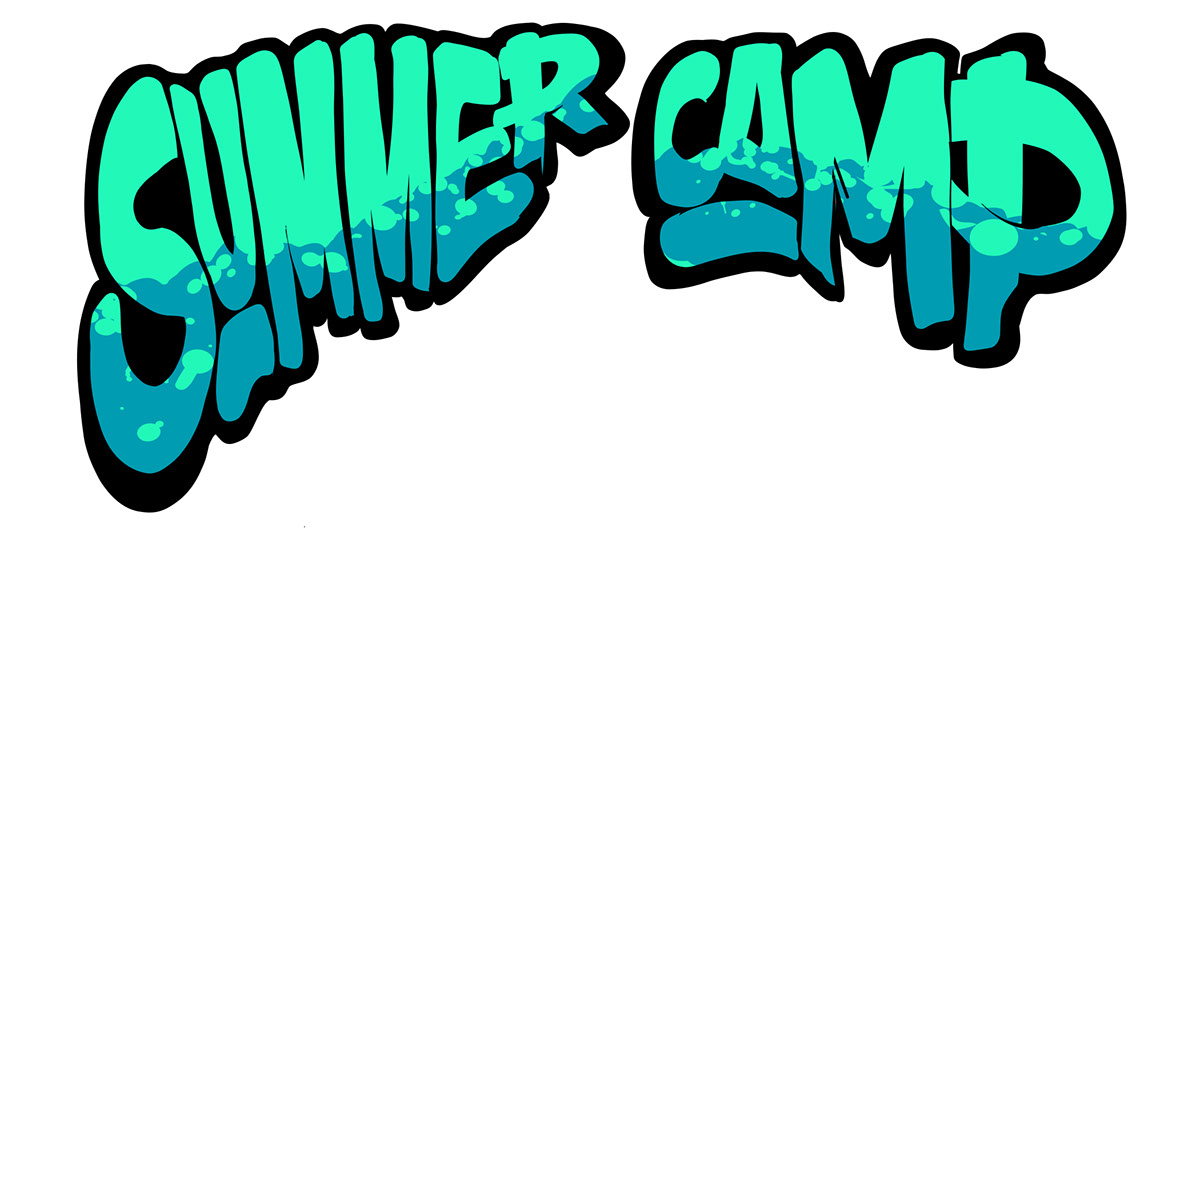 Summer Camp Skull rendition image